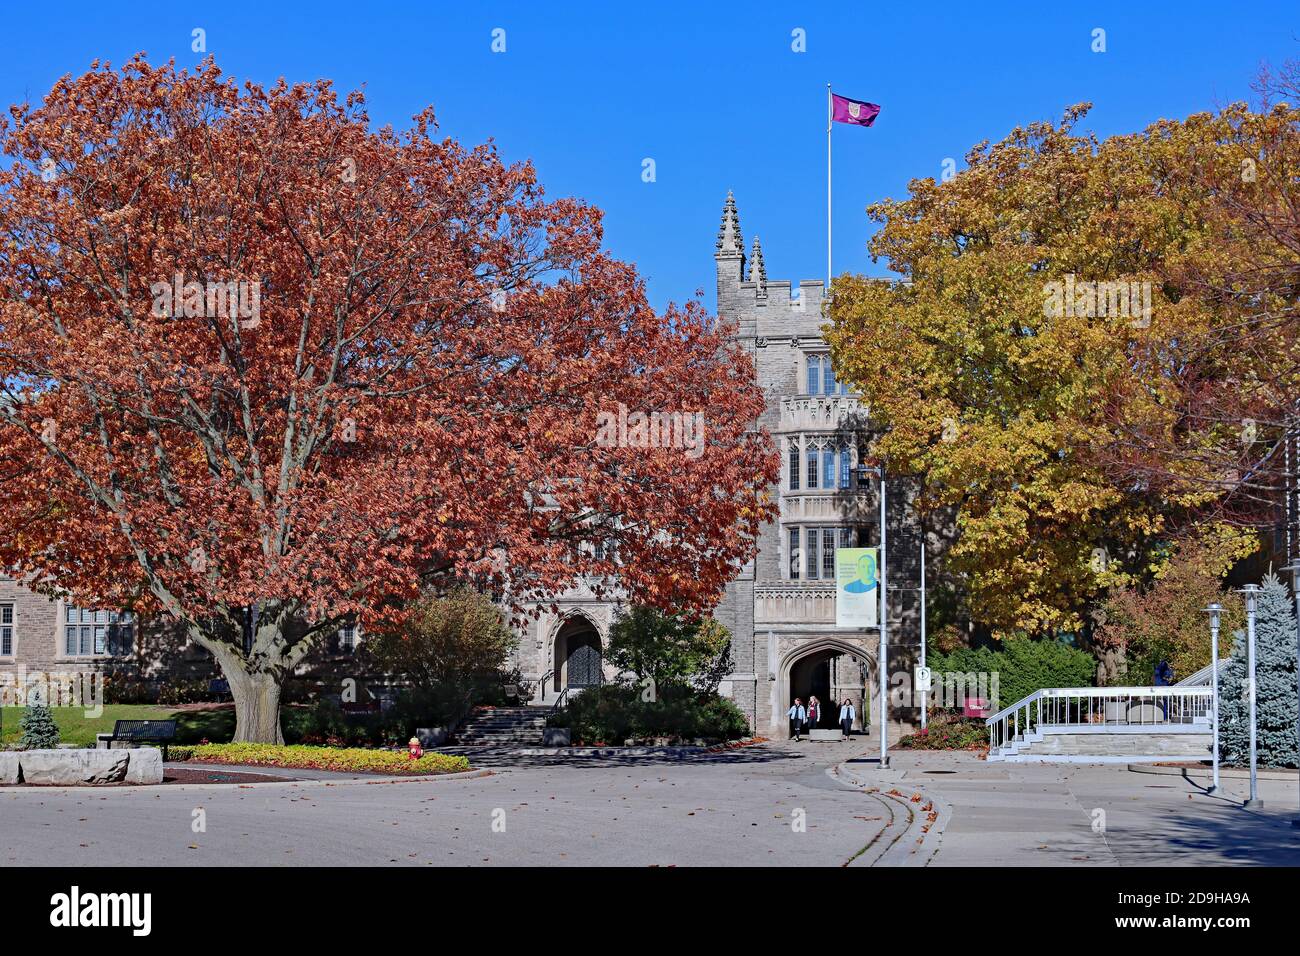 Hamilton, Ontario, Canadá - 4 de noviembre de 2020: El campus de la Universidad McMaster tiene una serie de edificios de piedra de estilo gótico que datan de la primera etapa Foto de stock